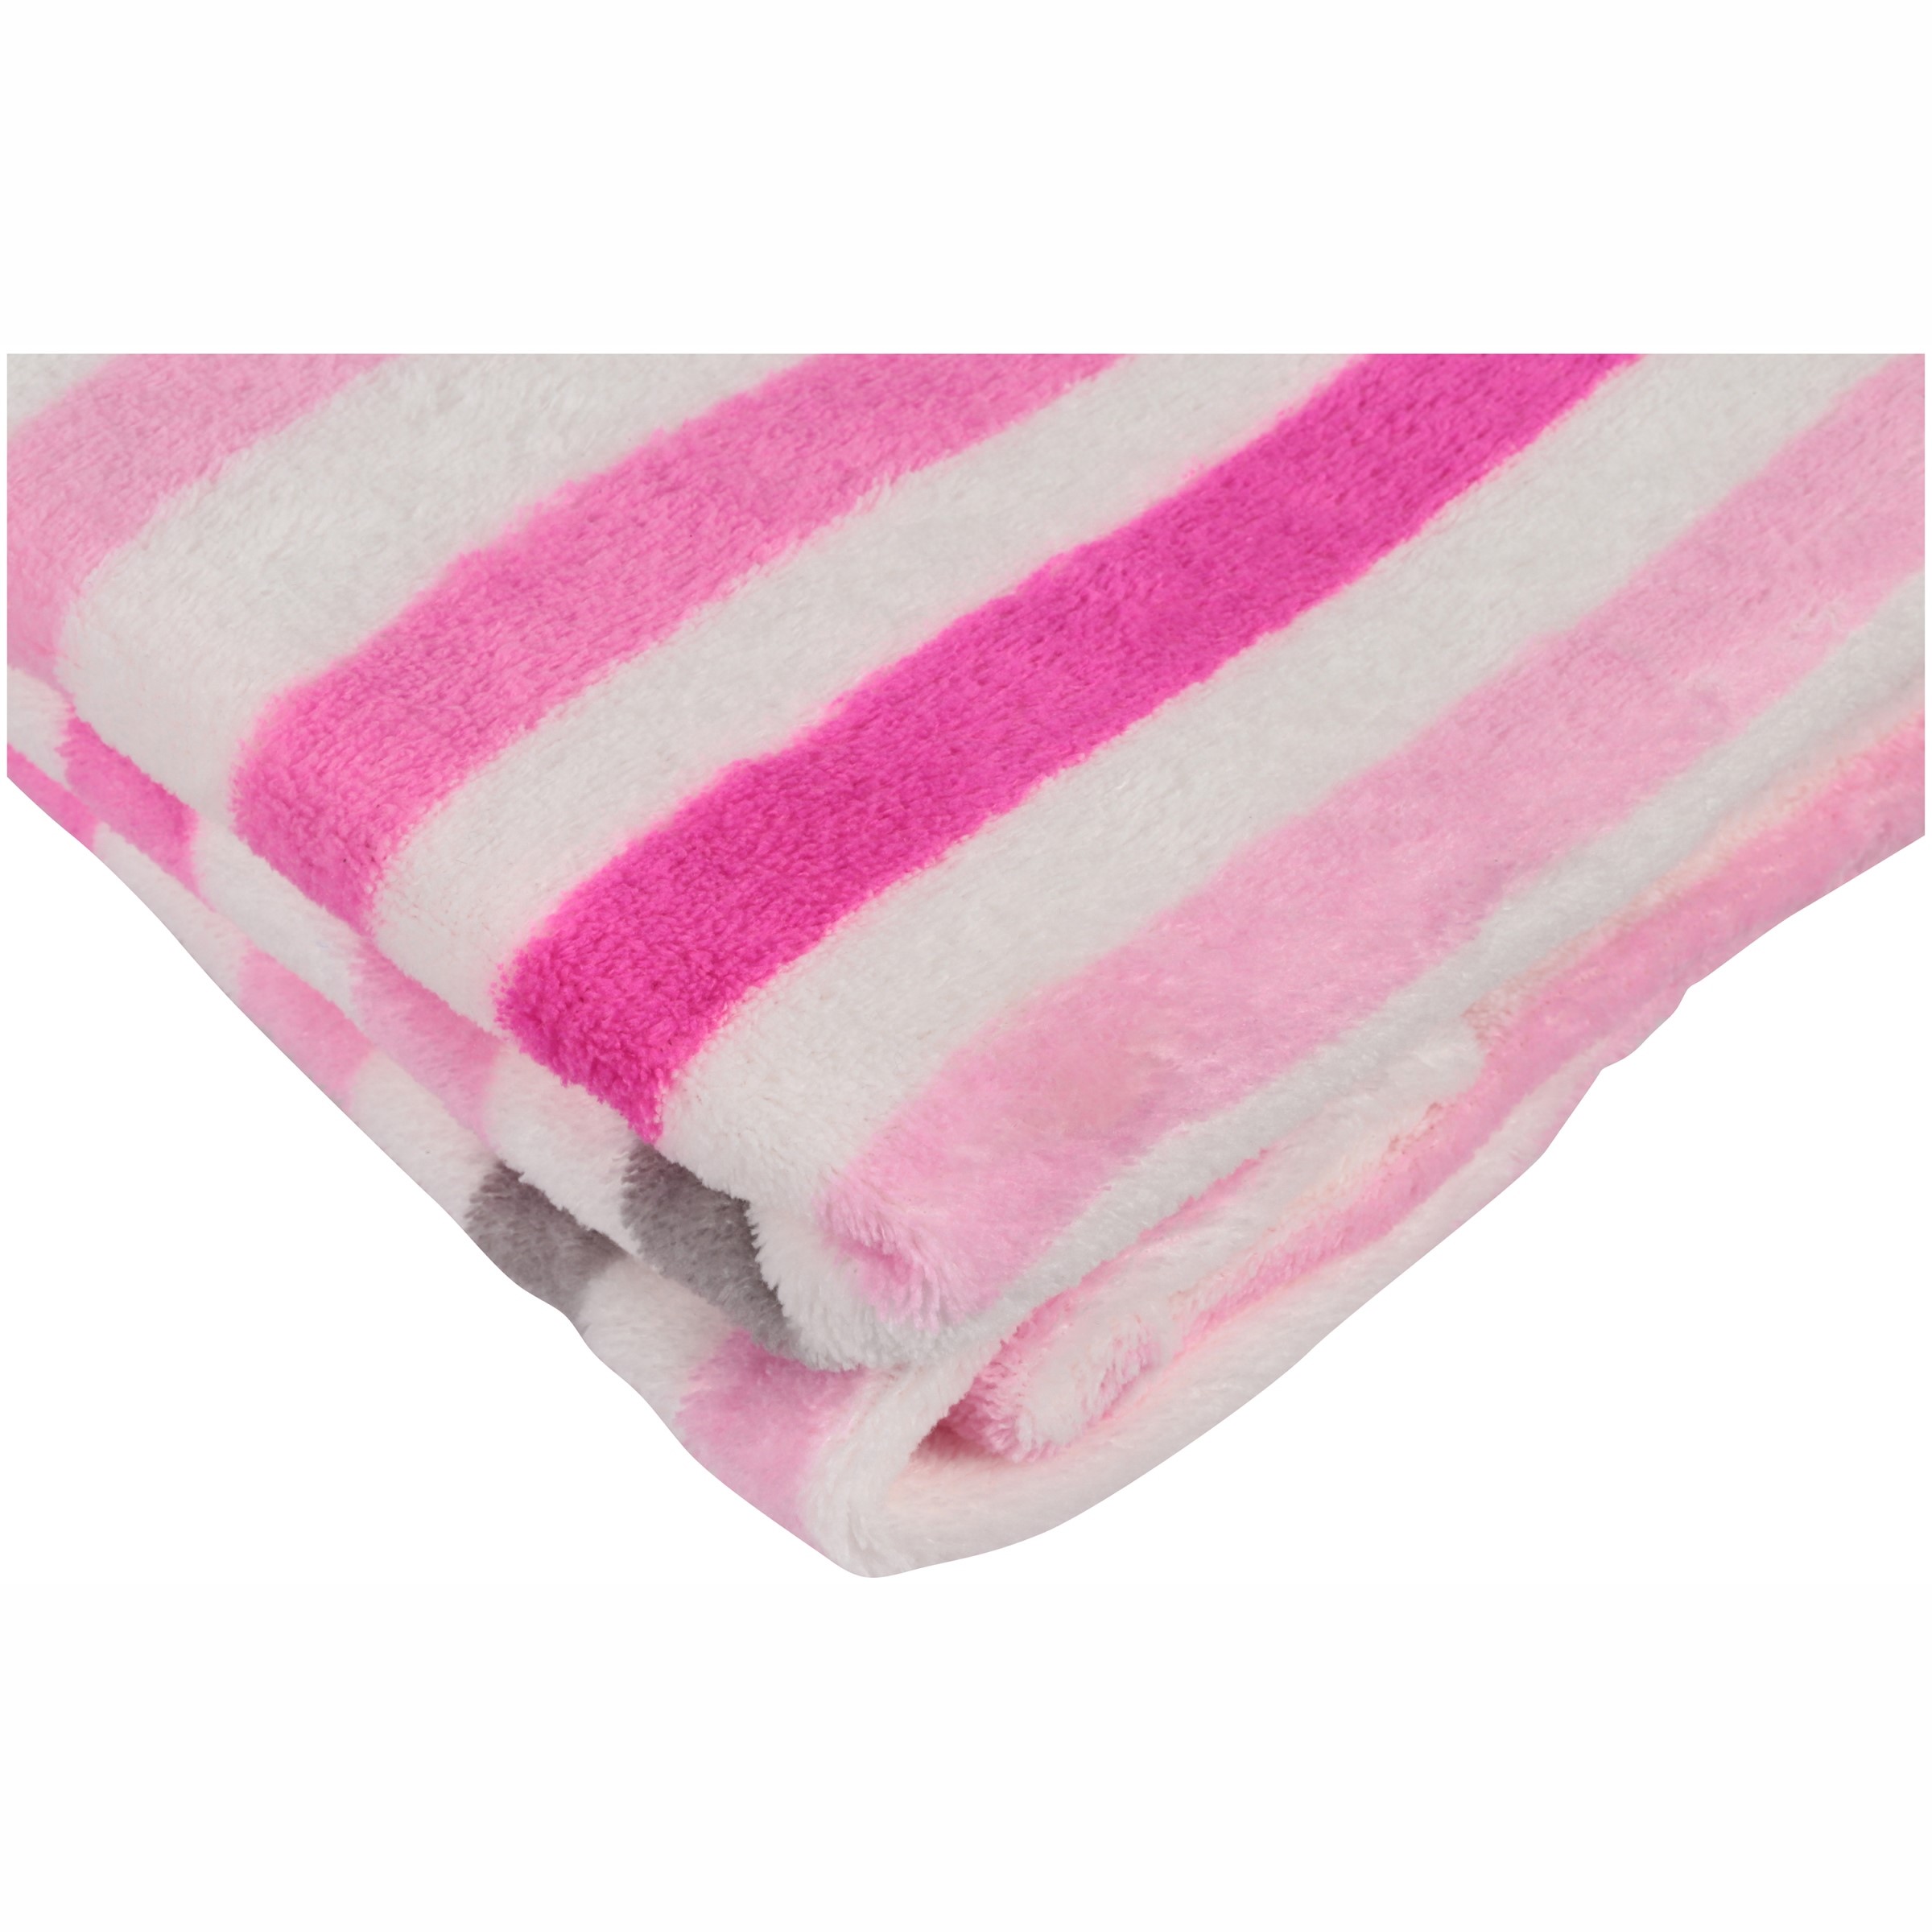 Little Starter Female Plush Blanket Pink 95% Plush Crib Blanket - image 3 of 3